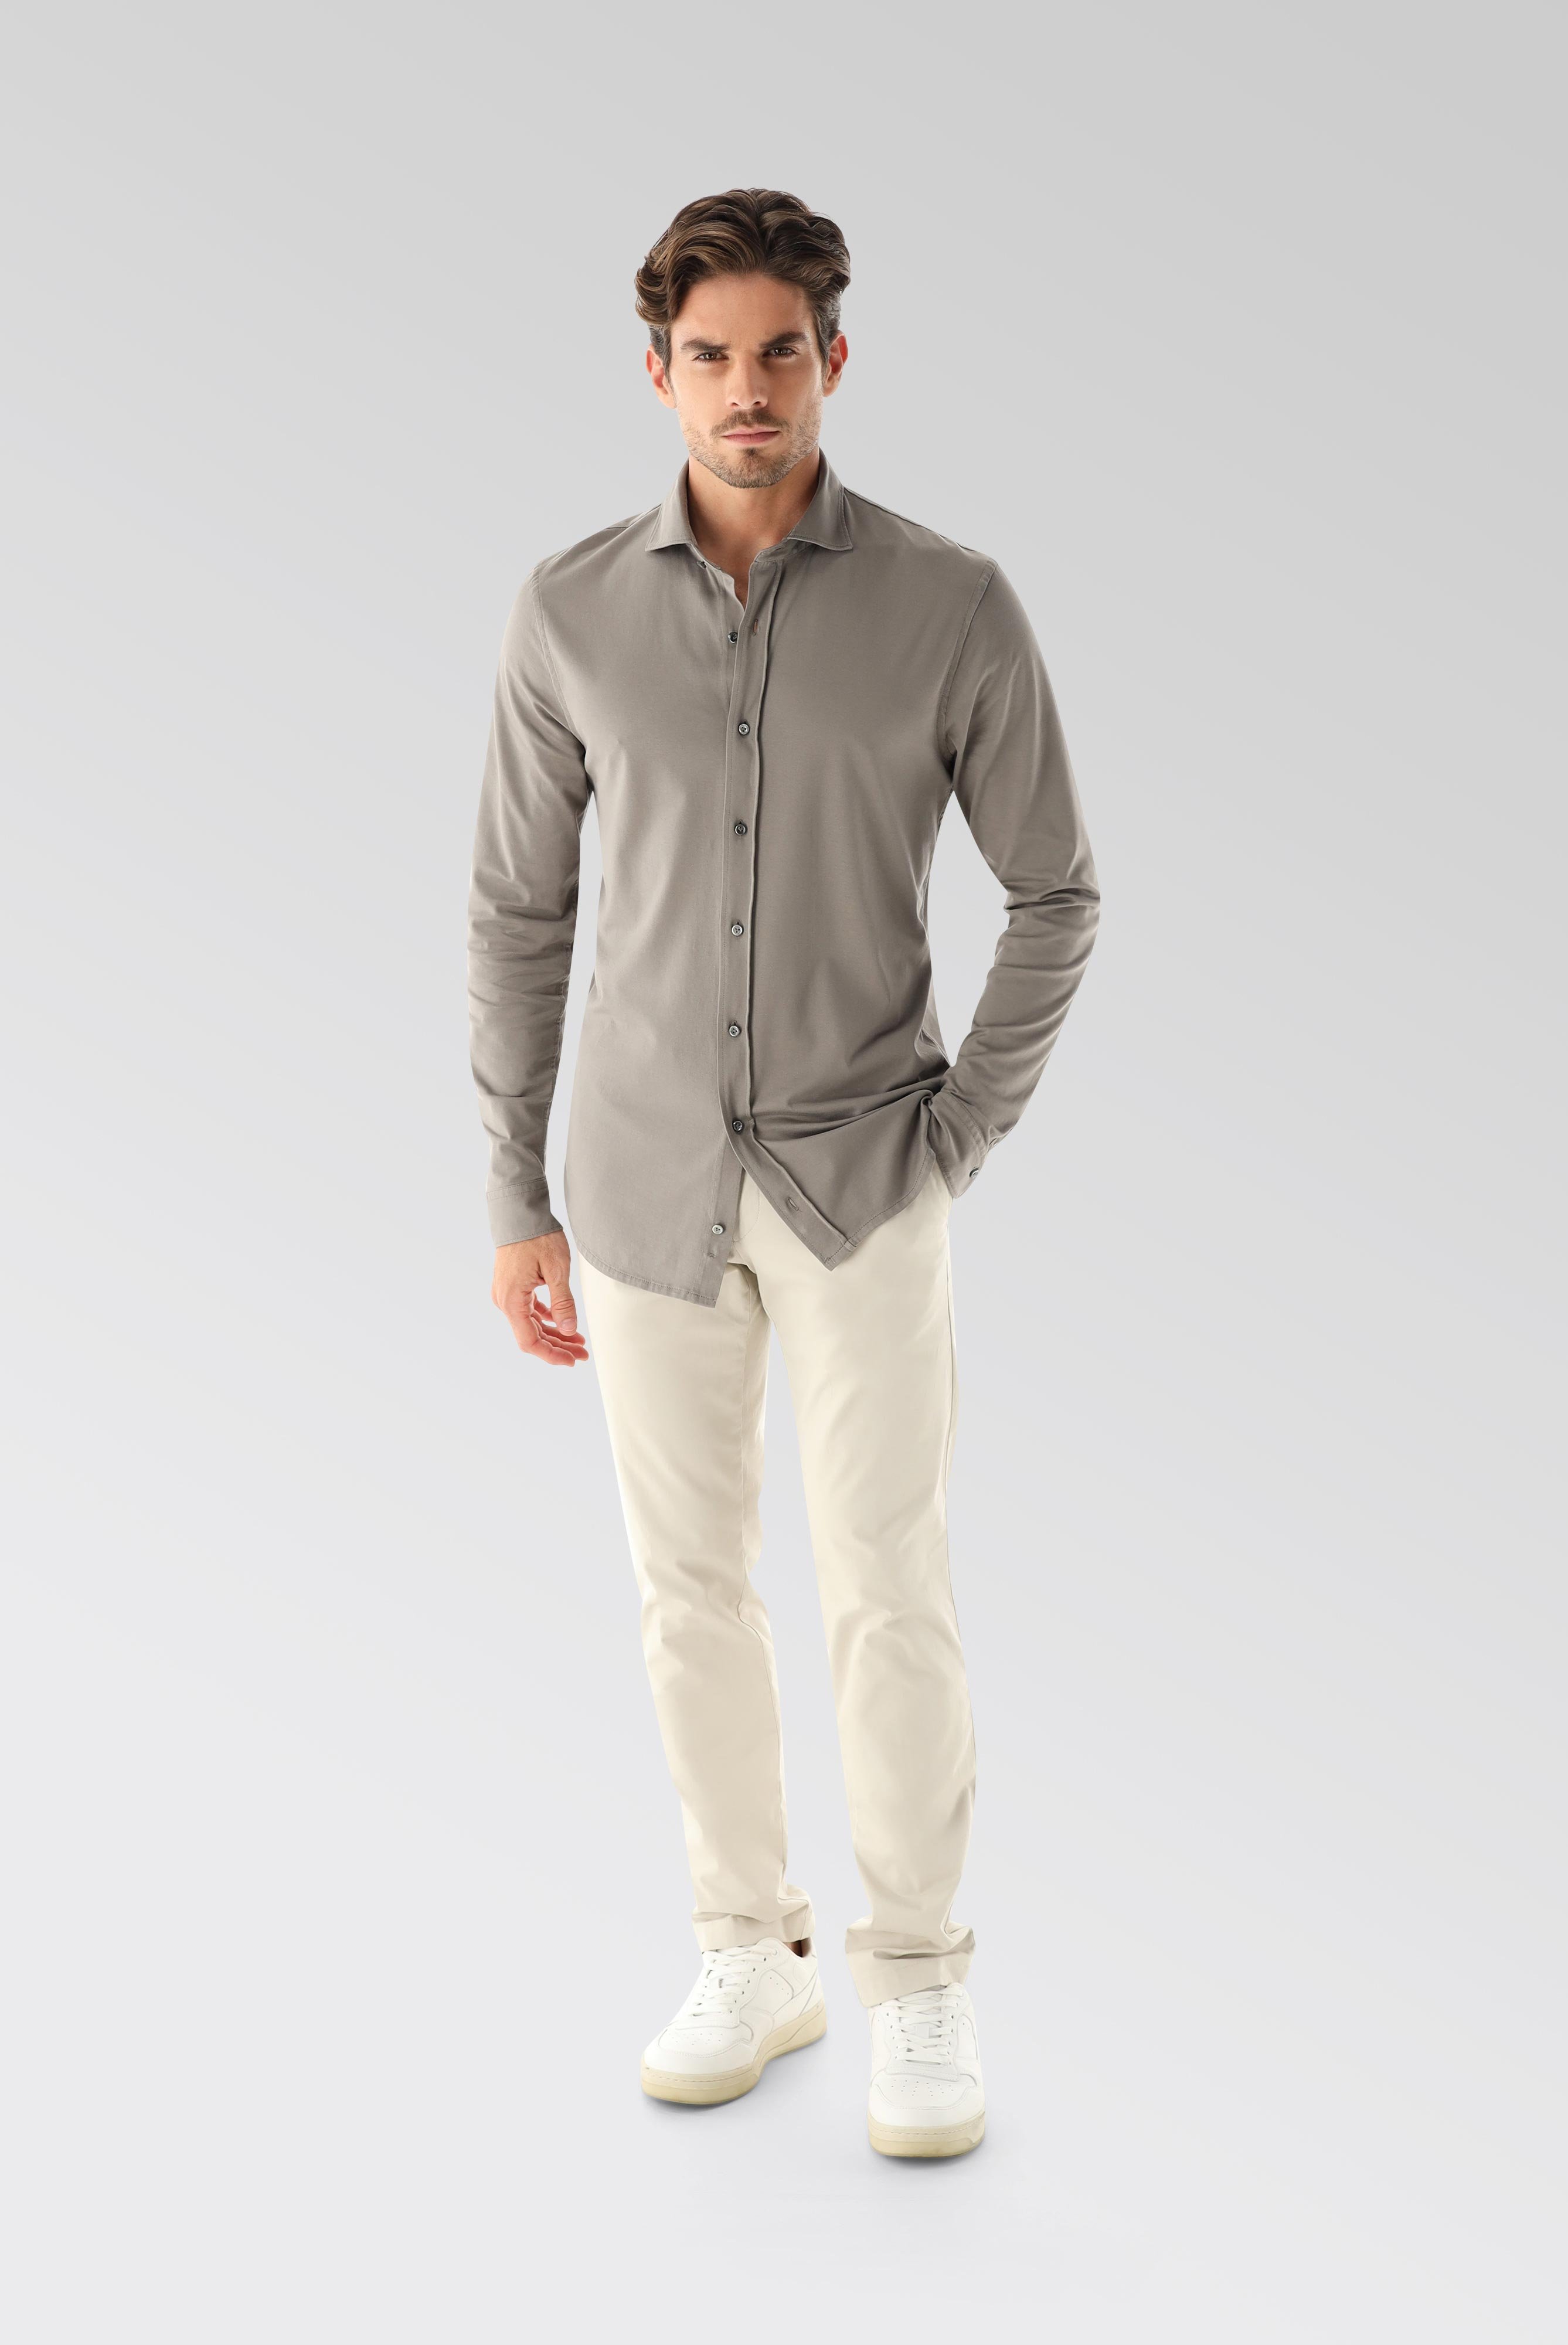 Jersey Hemden+Jersey Shirt Urban Look Slim Fit+20.1651.UC.Z20044.060.S